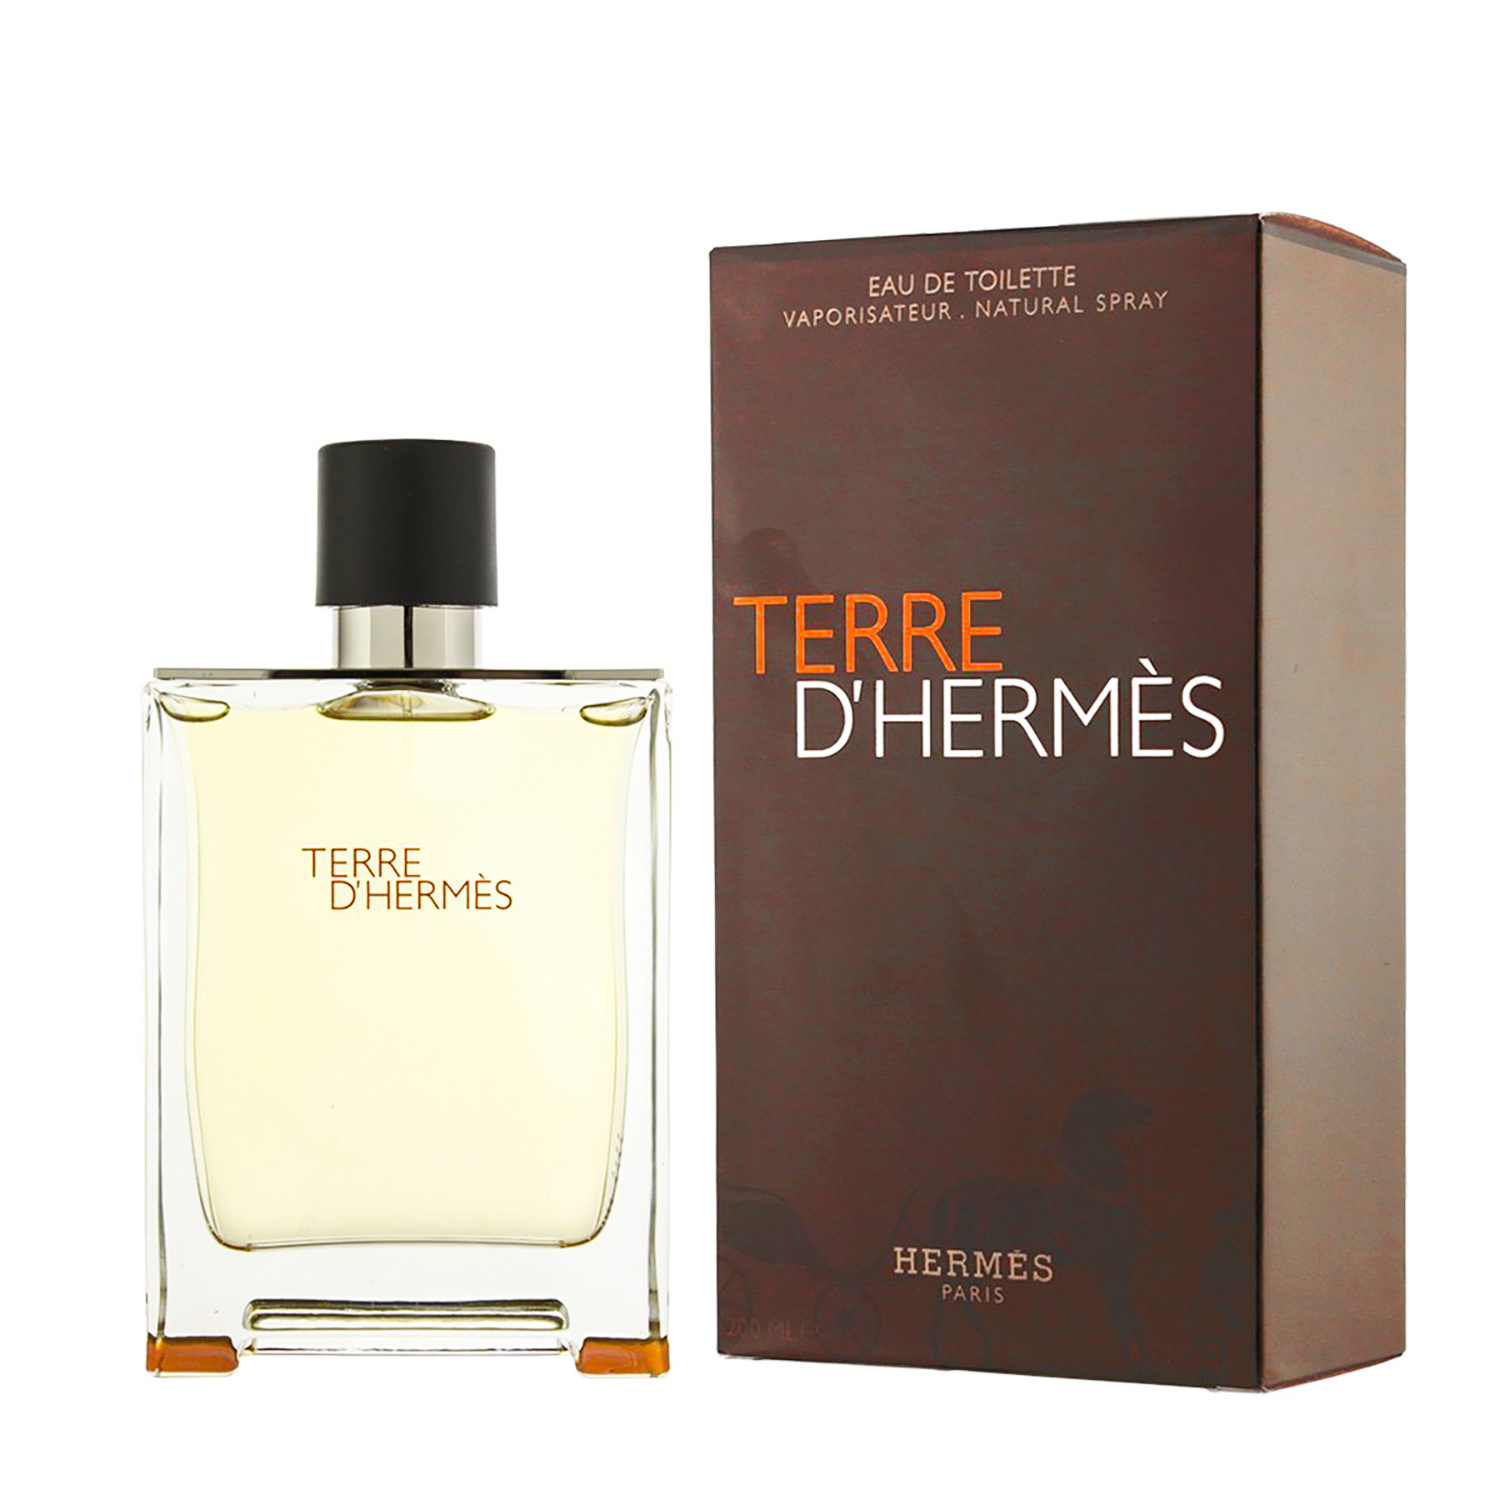 Купить Туалетная вода Hermes, Hermes Terre D'hermes Eau De Toilette 100.0ml тестер, Франция